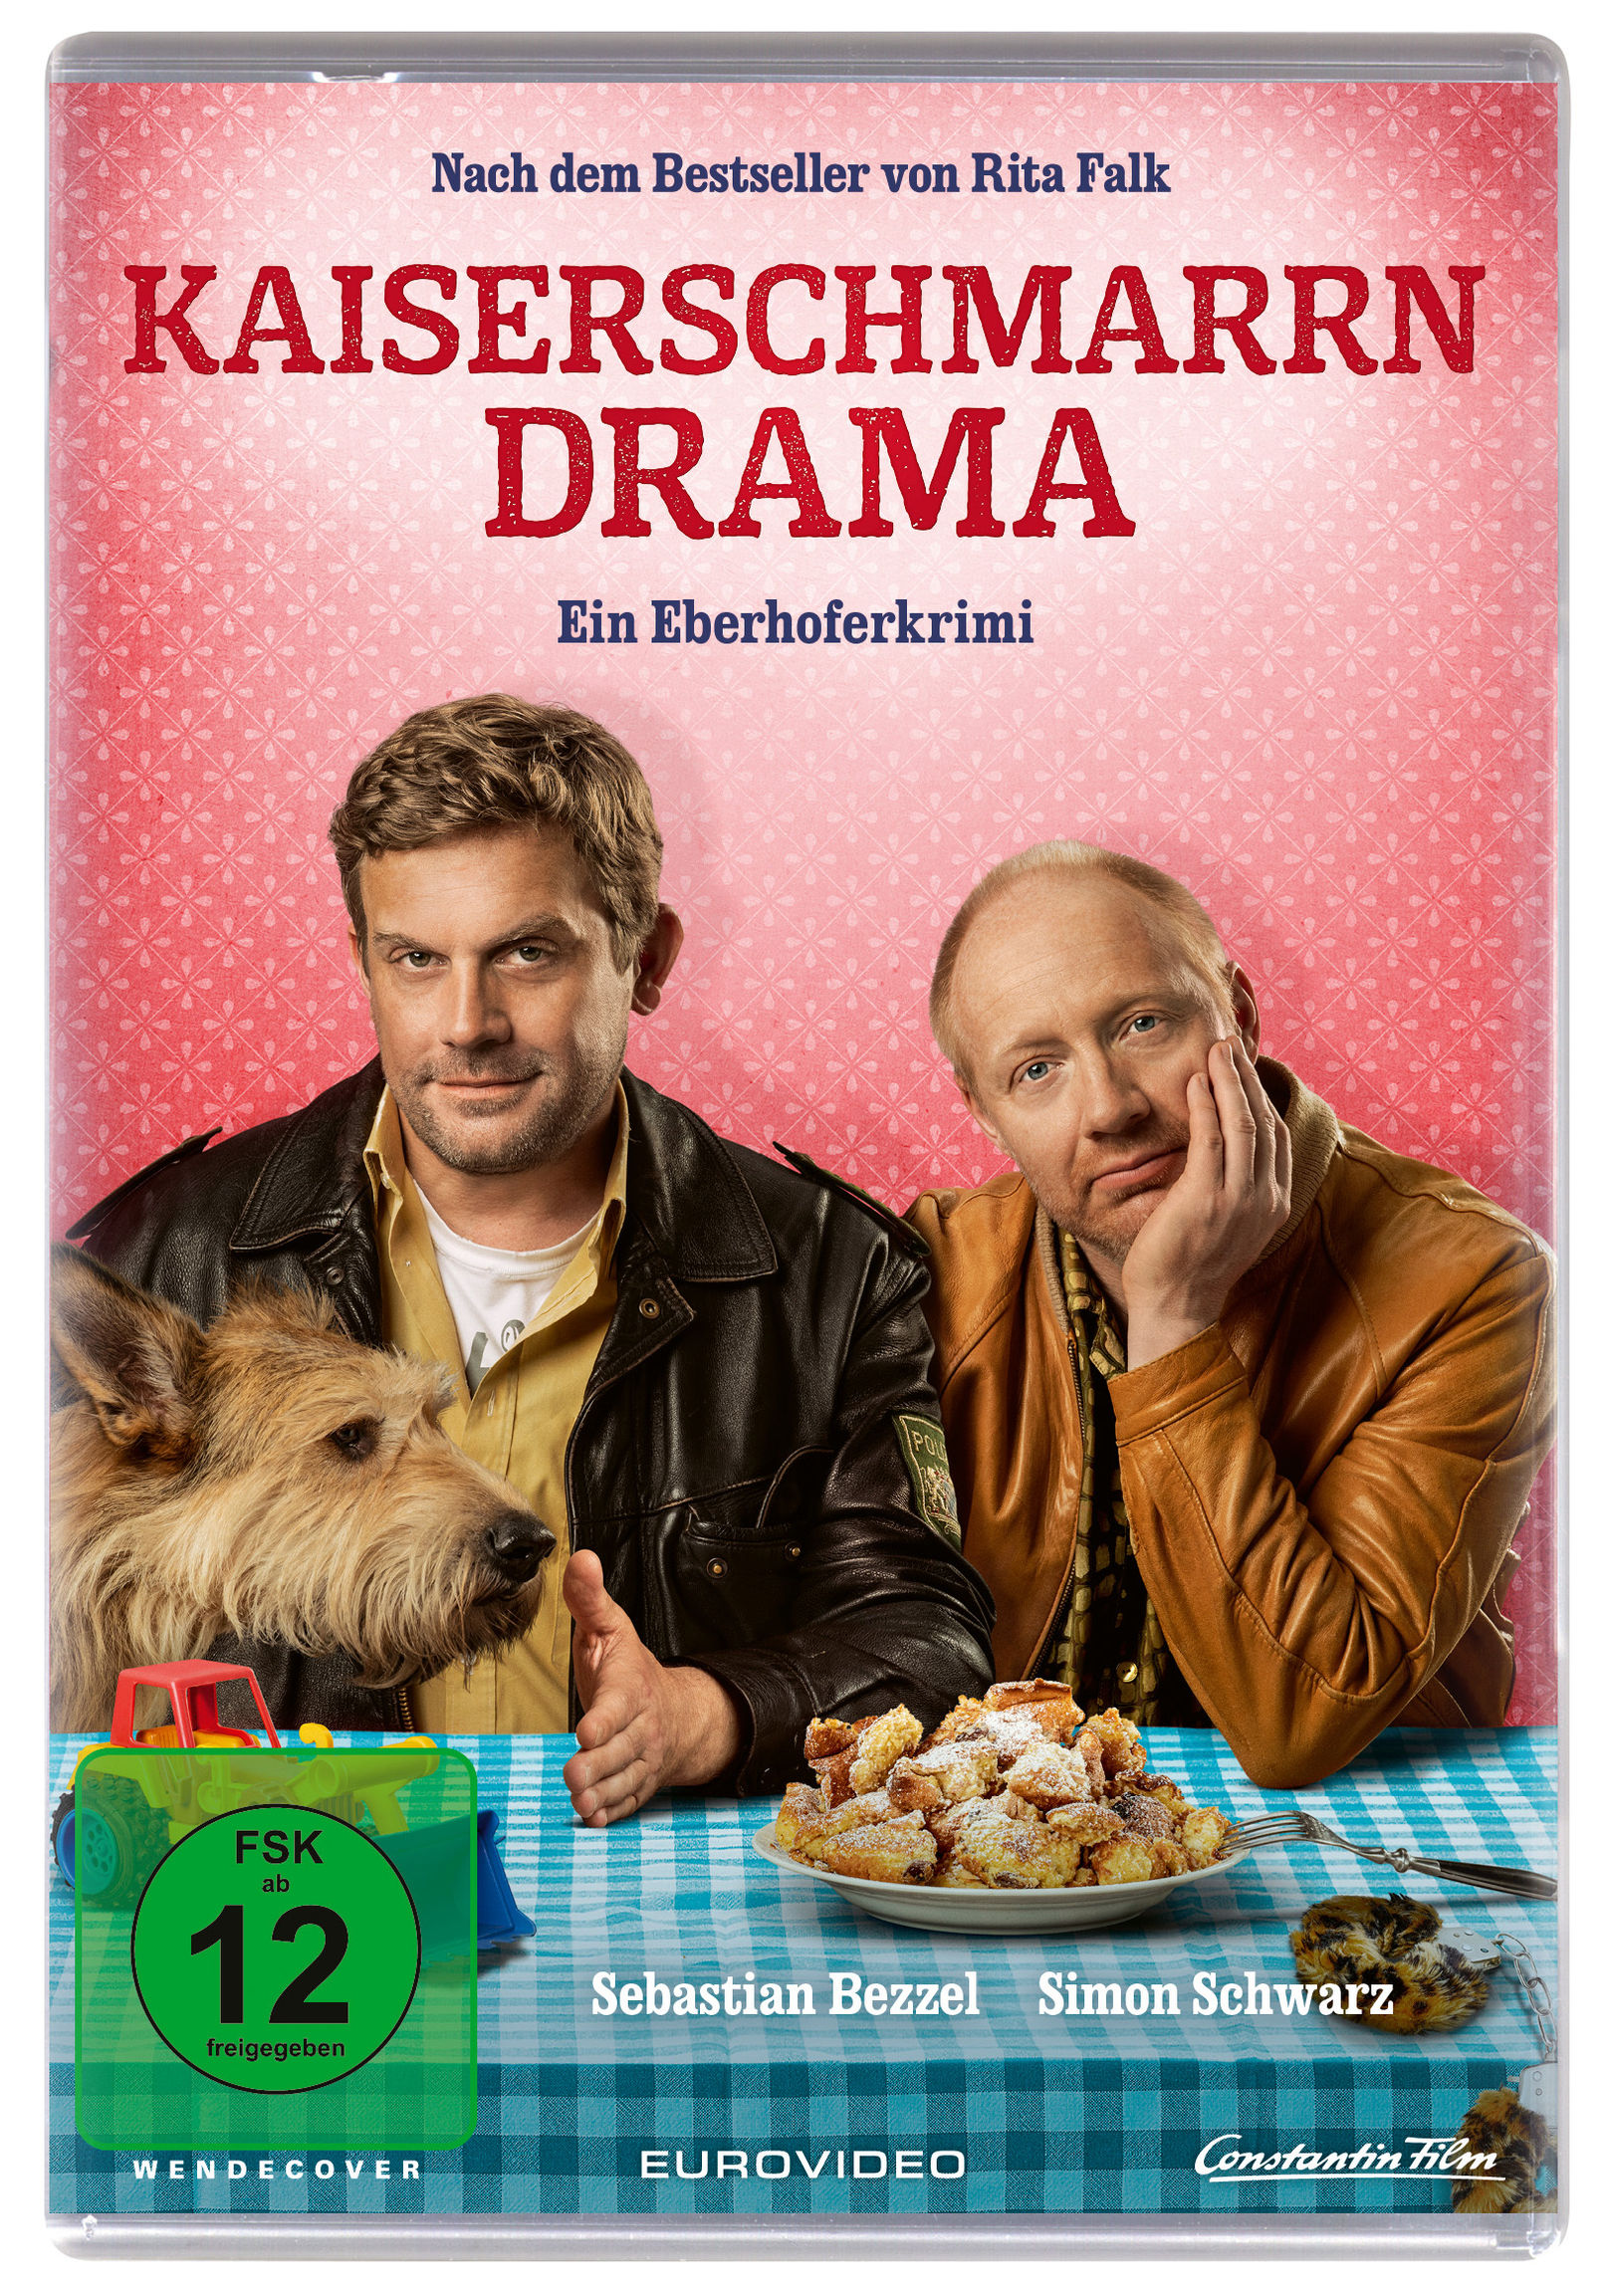 Kaiserschmarrndrama DVD jetzt bei Weltbild.ch online bestellen